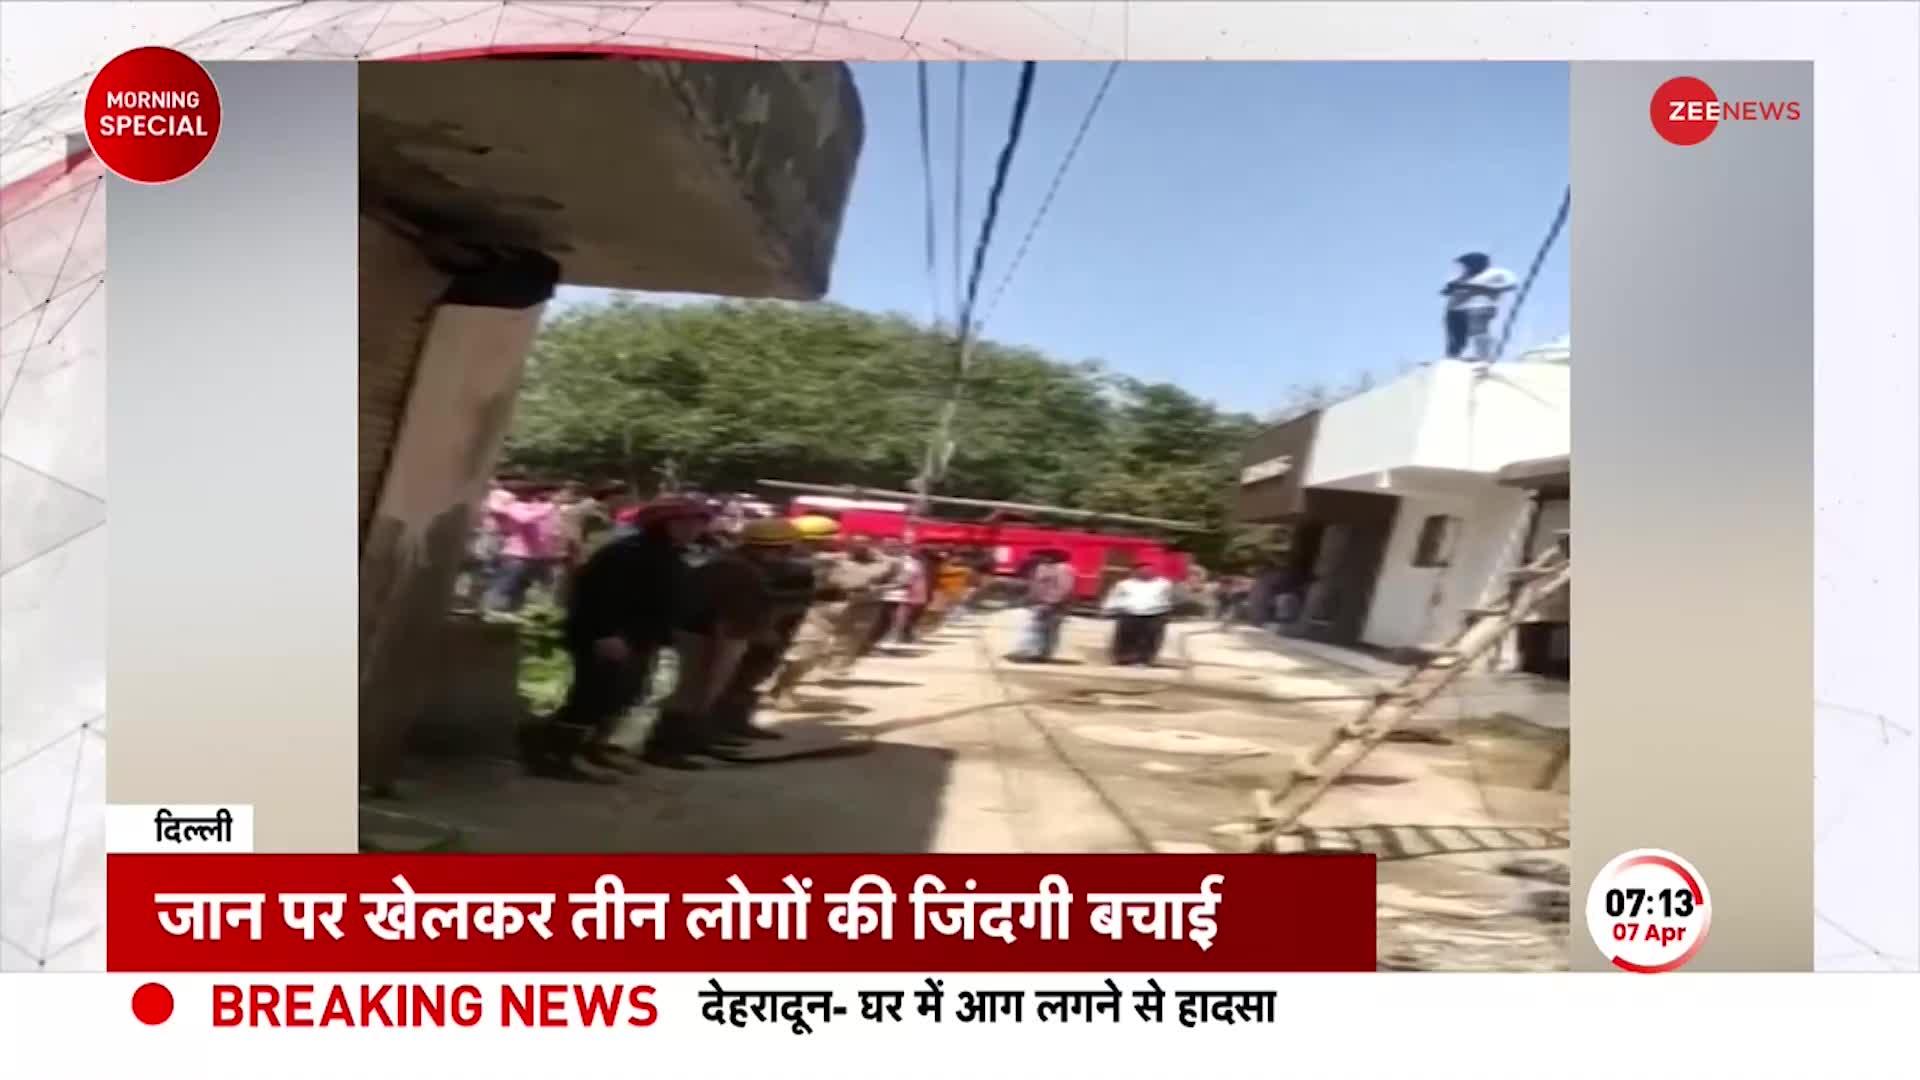 Delhi Fire News: Begumpur इलाके में भयंकर अग्निकांड, जान पर खेलकर Police ने बचाई तीन लोगों की जान